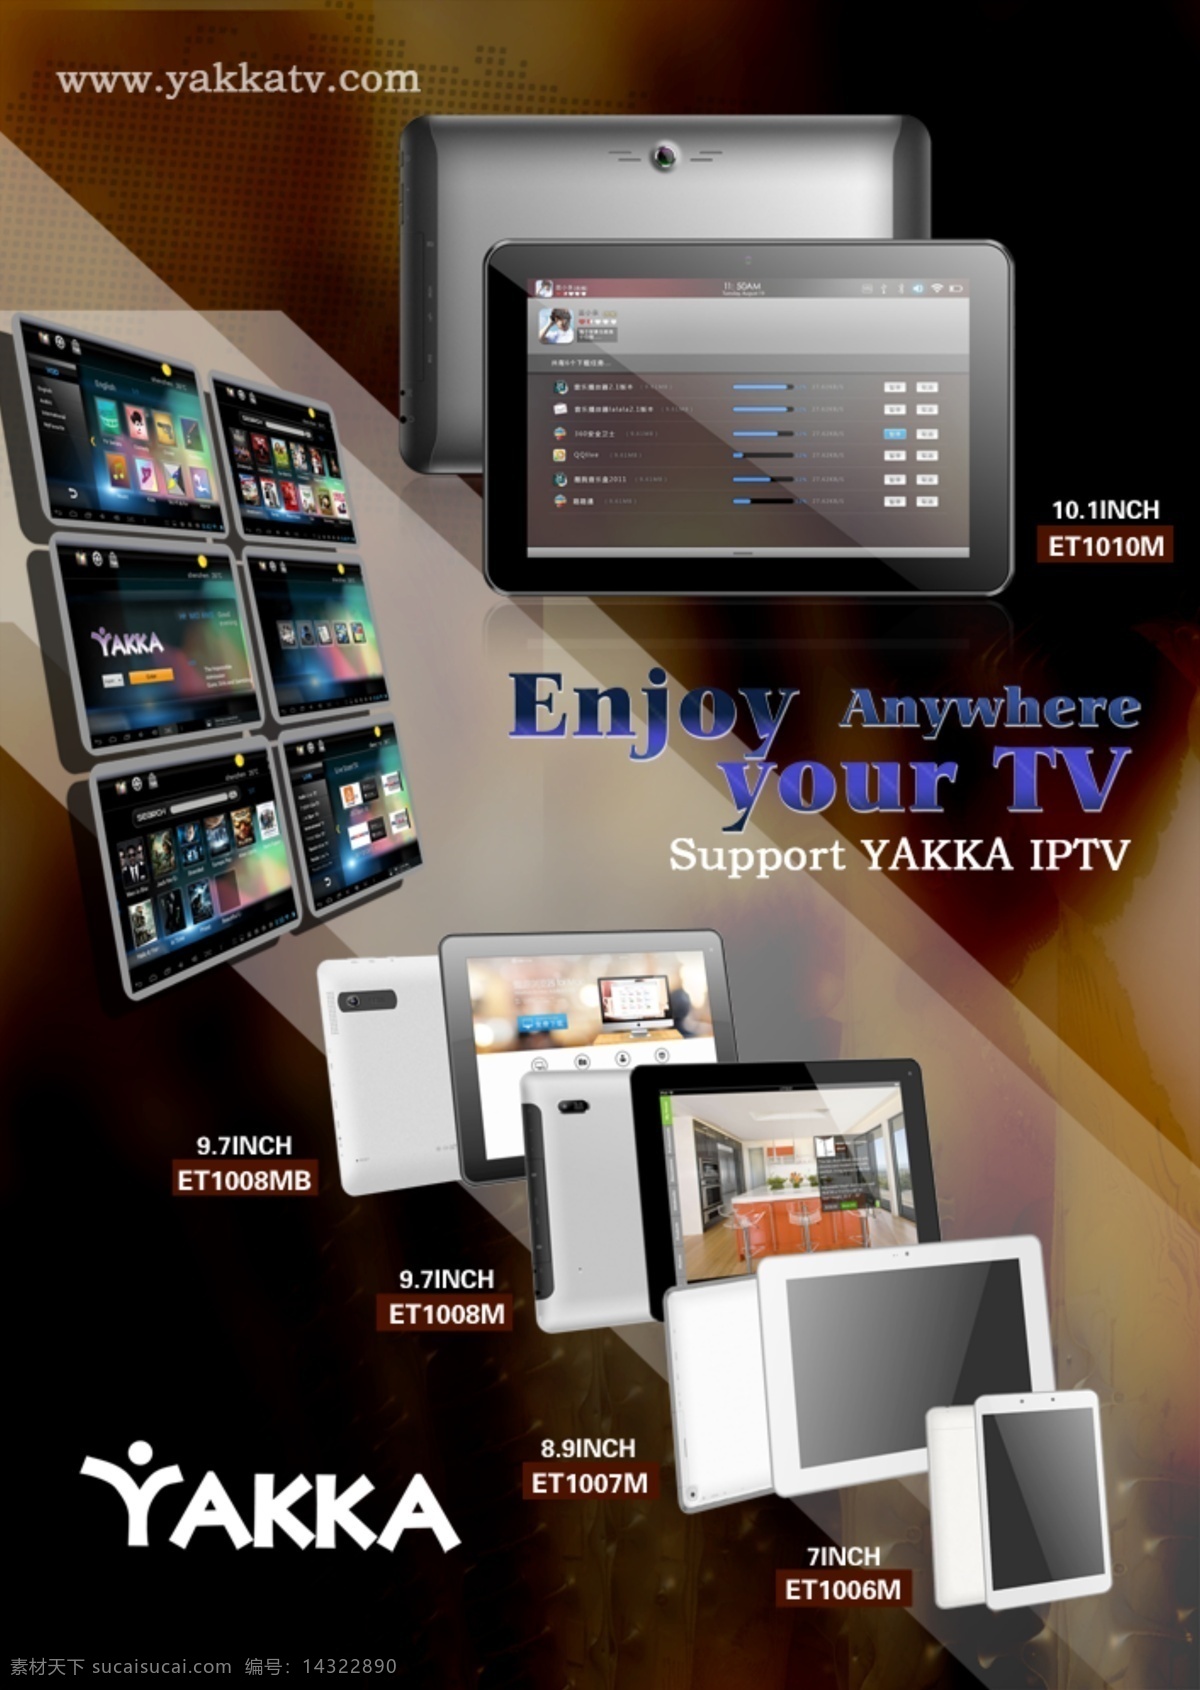 平板电脑 宣传单 网络电视 yakka iptv